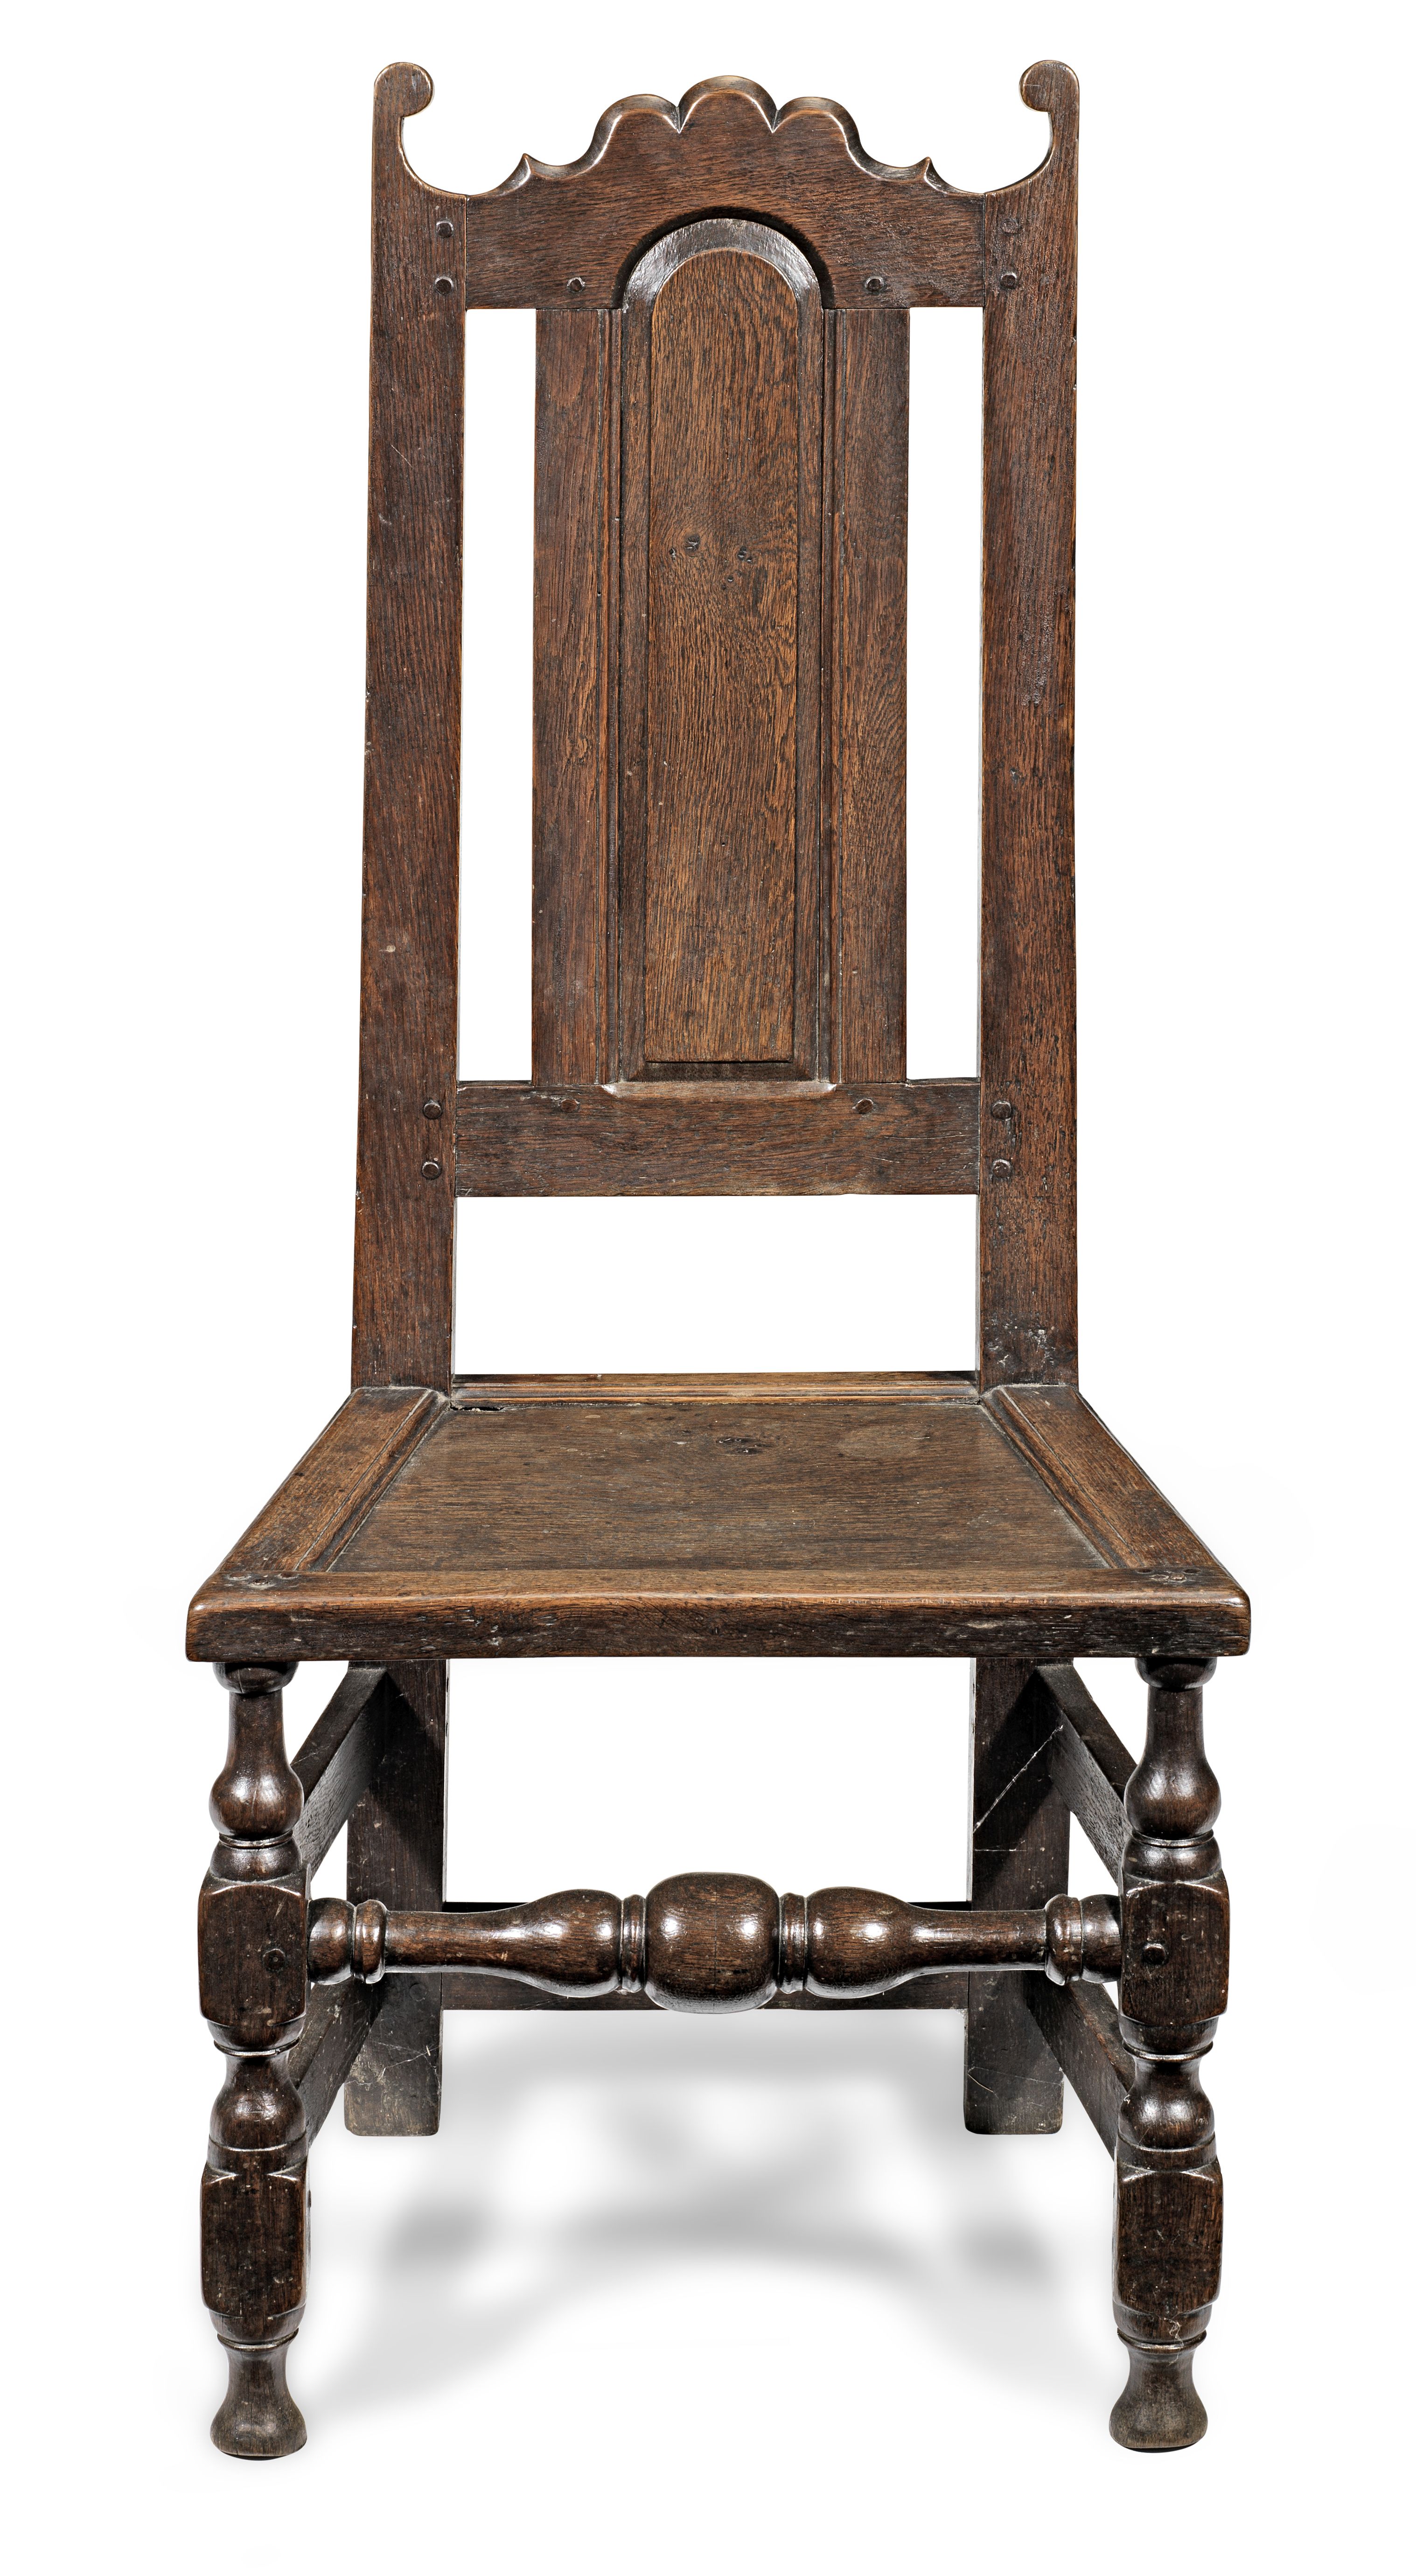 A late 17th century oak high-back chair, English, circa 1685